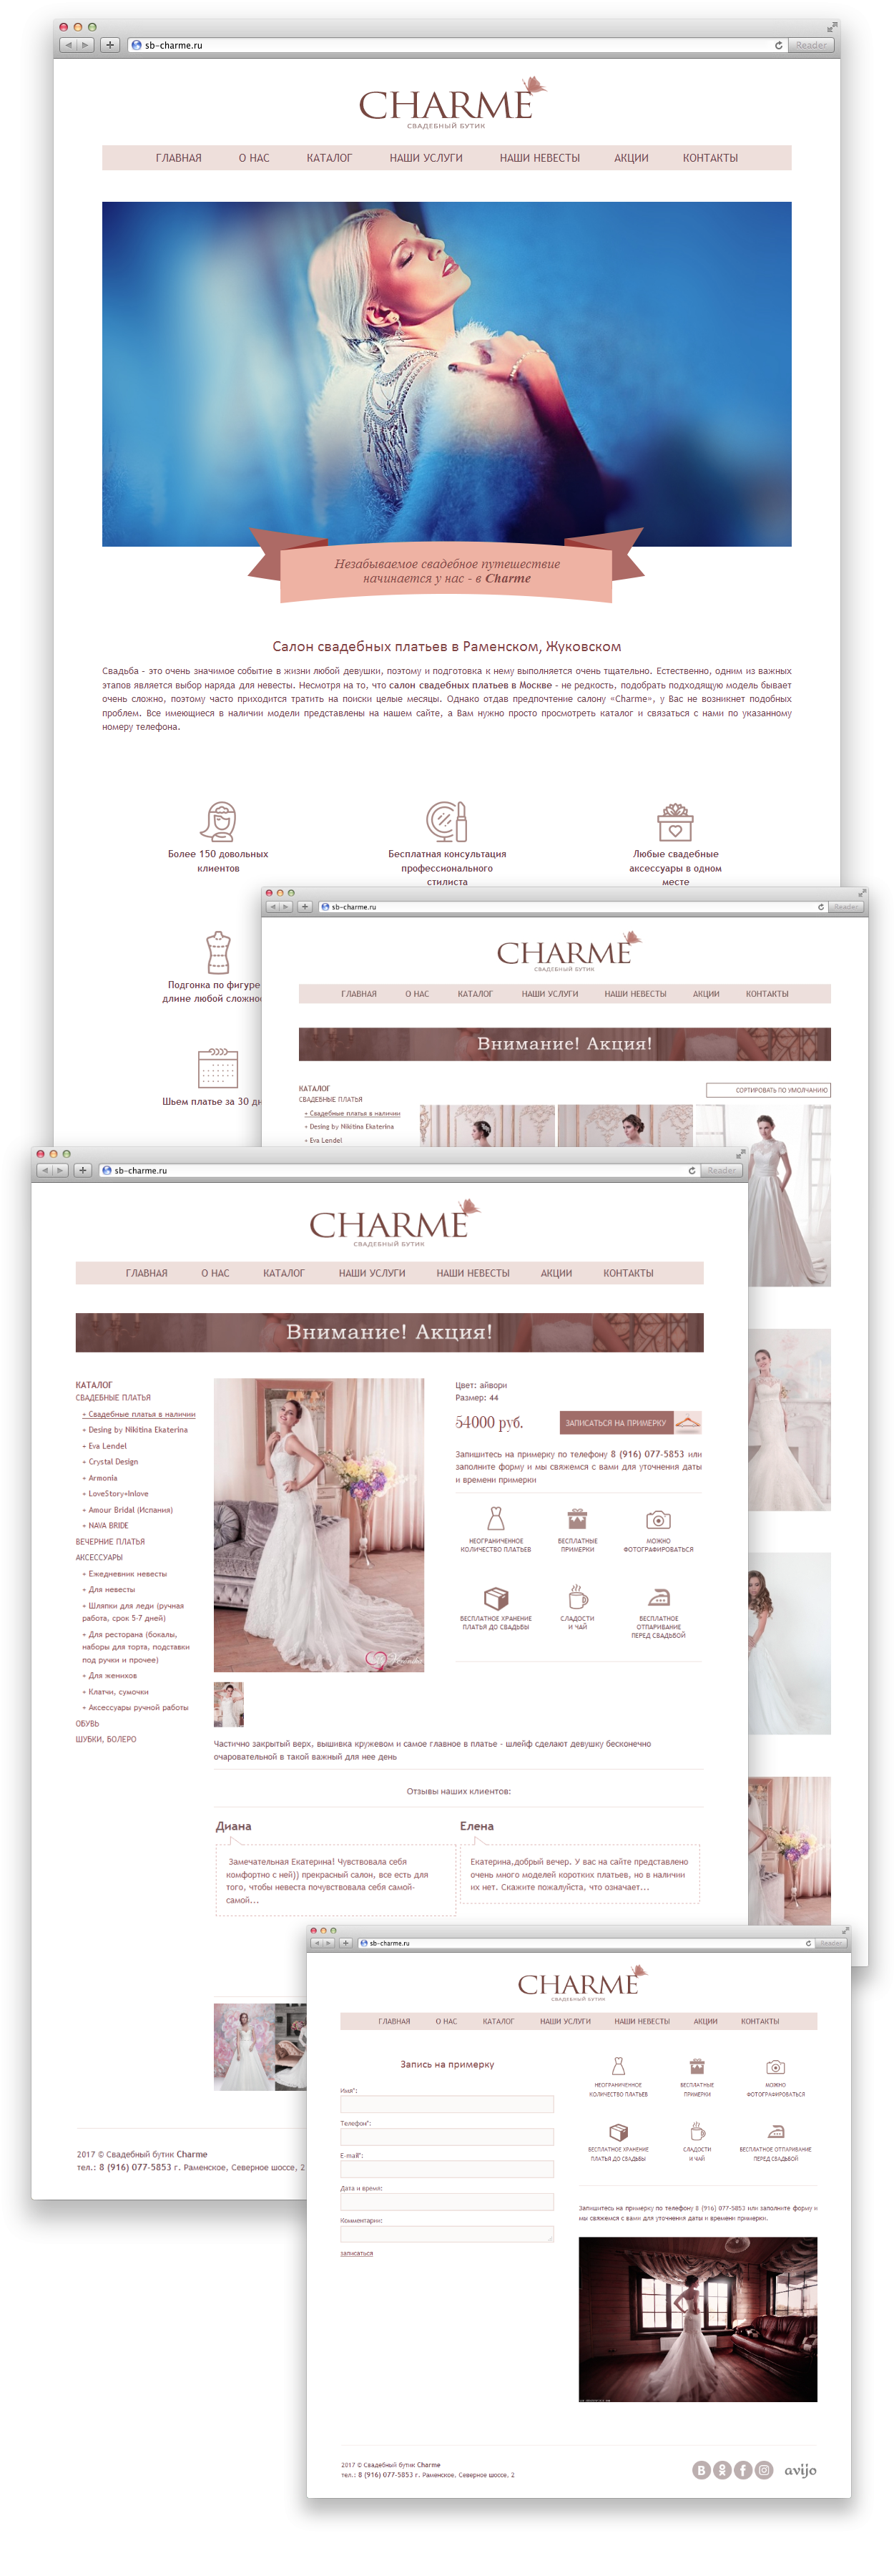 Разработка интернет-магазина для свадебного бутика «CHARME» — РФ. Авторская разработка сайтов по индивидуальному заказу для любых видов бизнеса. Персональные и корпоративные сайты, интернет-магазины и лендинги под ключ